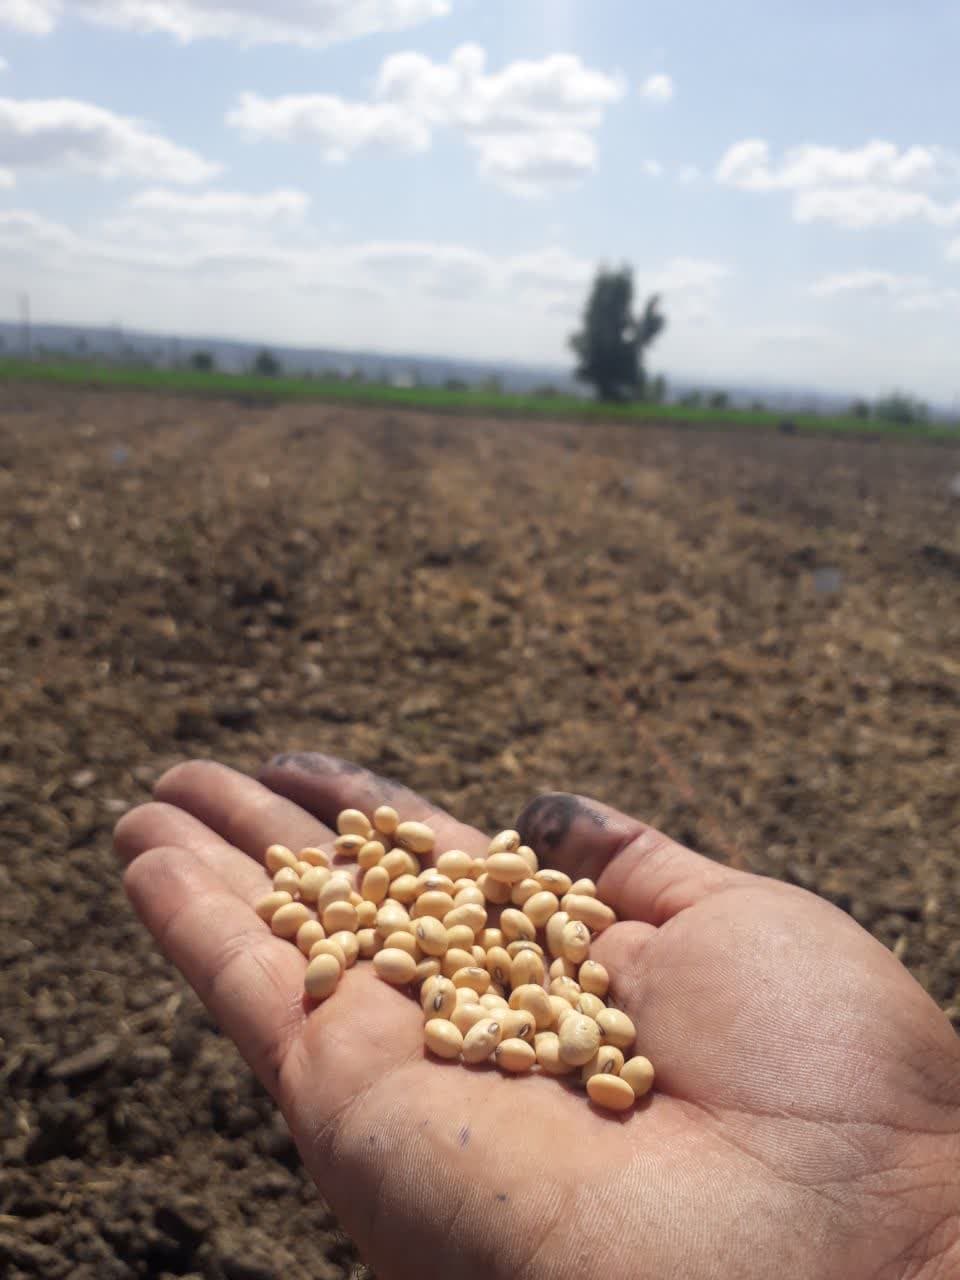 ارزیابی ژنوتیپ های زودرس سویا پس از شالی جهت تولید علوفه و دانه در شالیزارهای استان مازندران